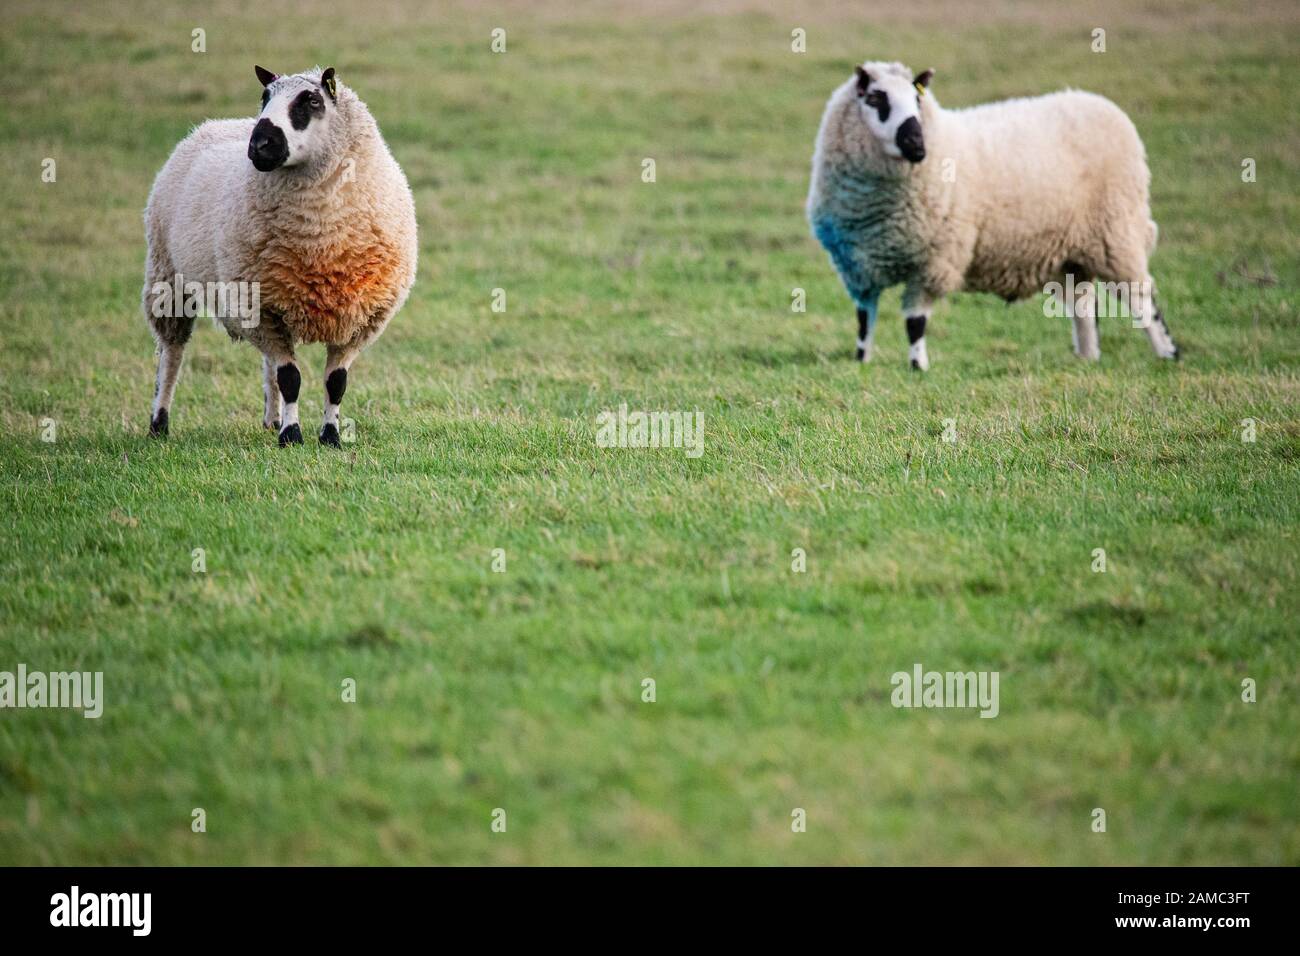 Deux moutons de Kerry Hill dans un champ dans le Kent. Il y a de l'espace de copie au bas de l'image. Ils obtiennent leur nom du village appelé Kerry. Banque D'Images